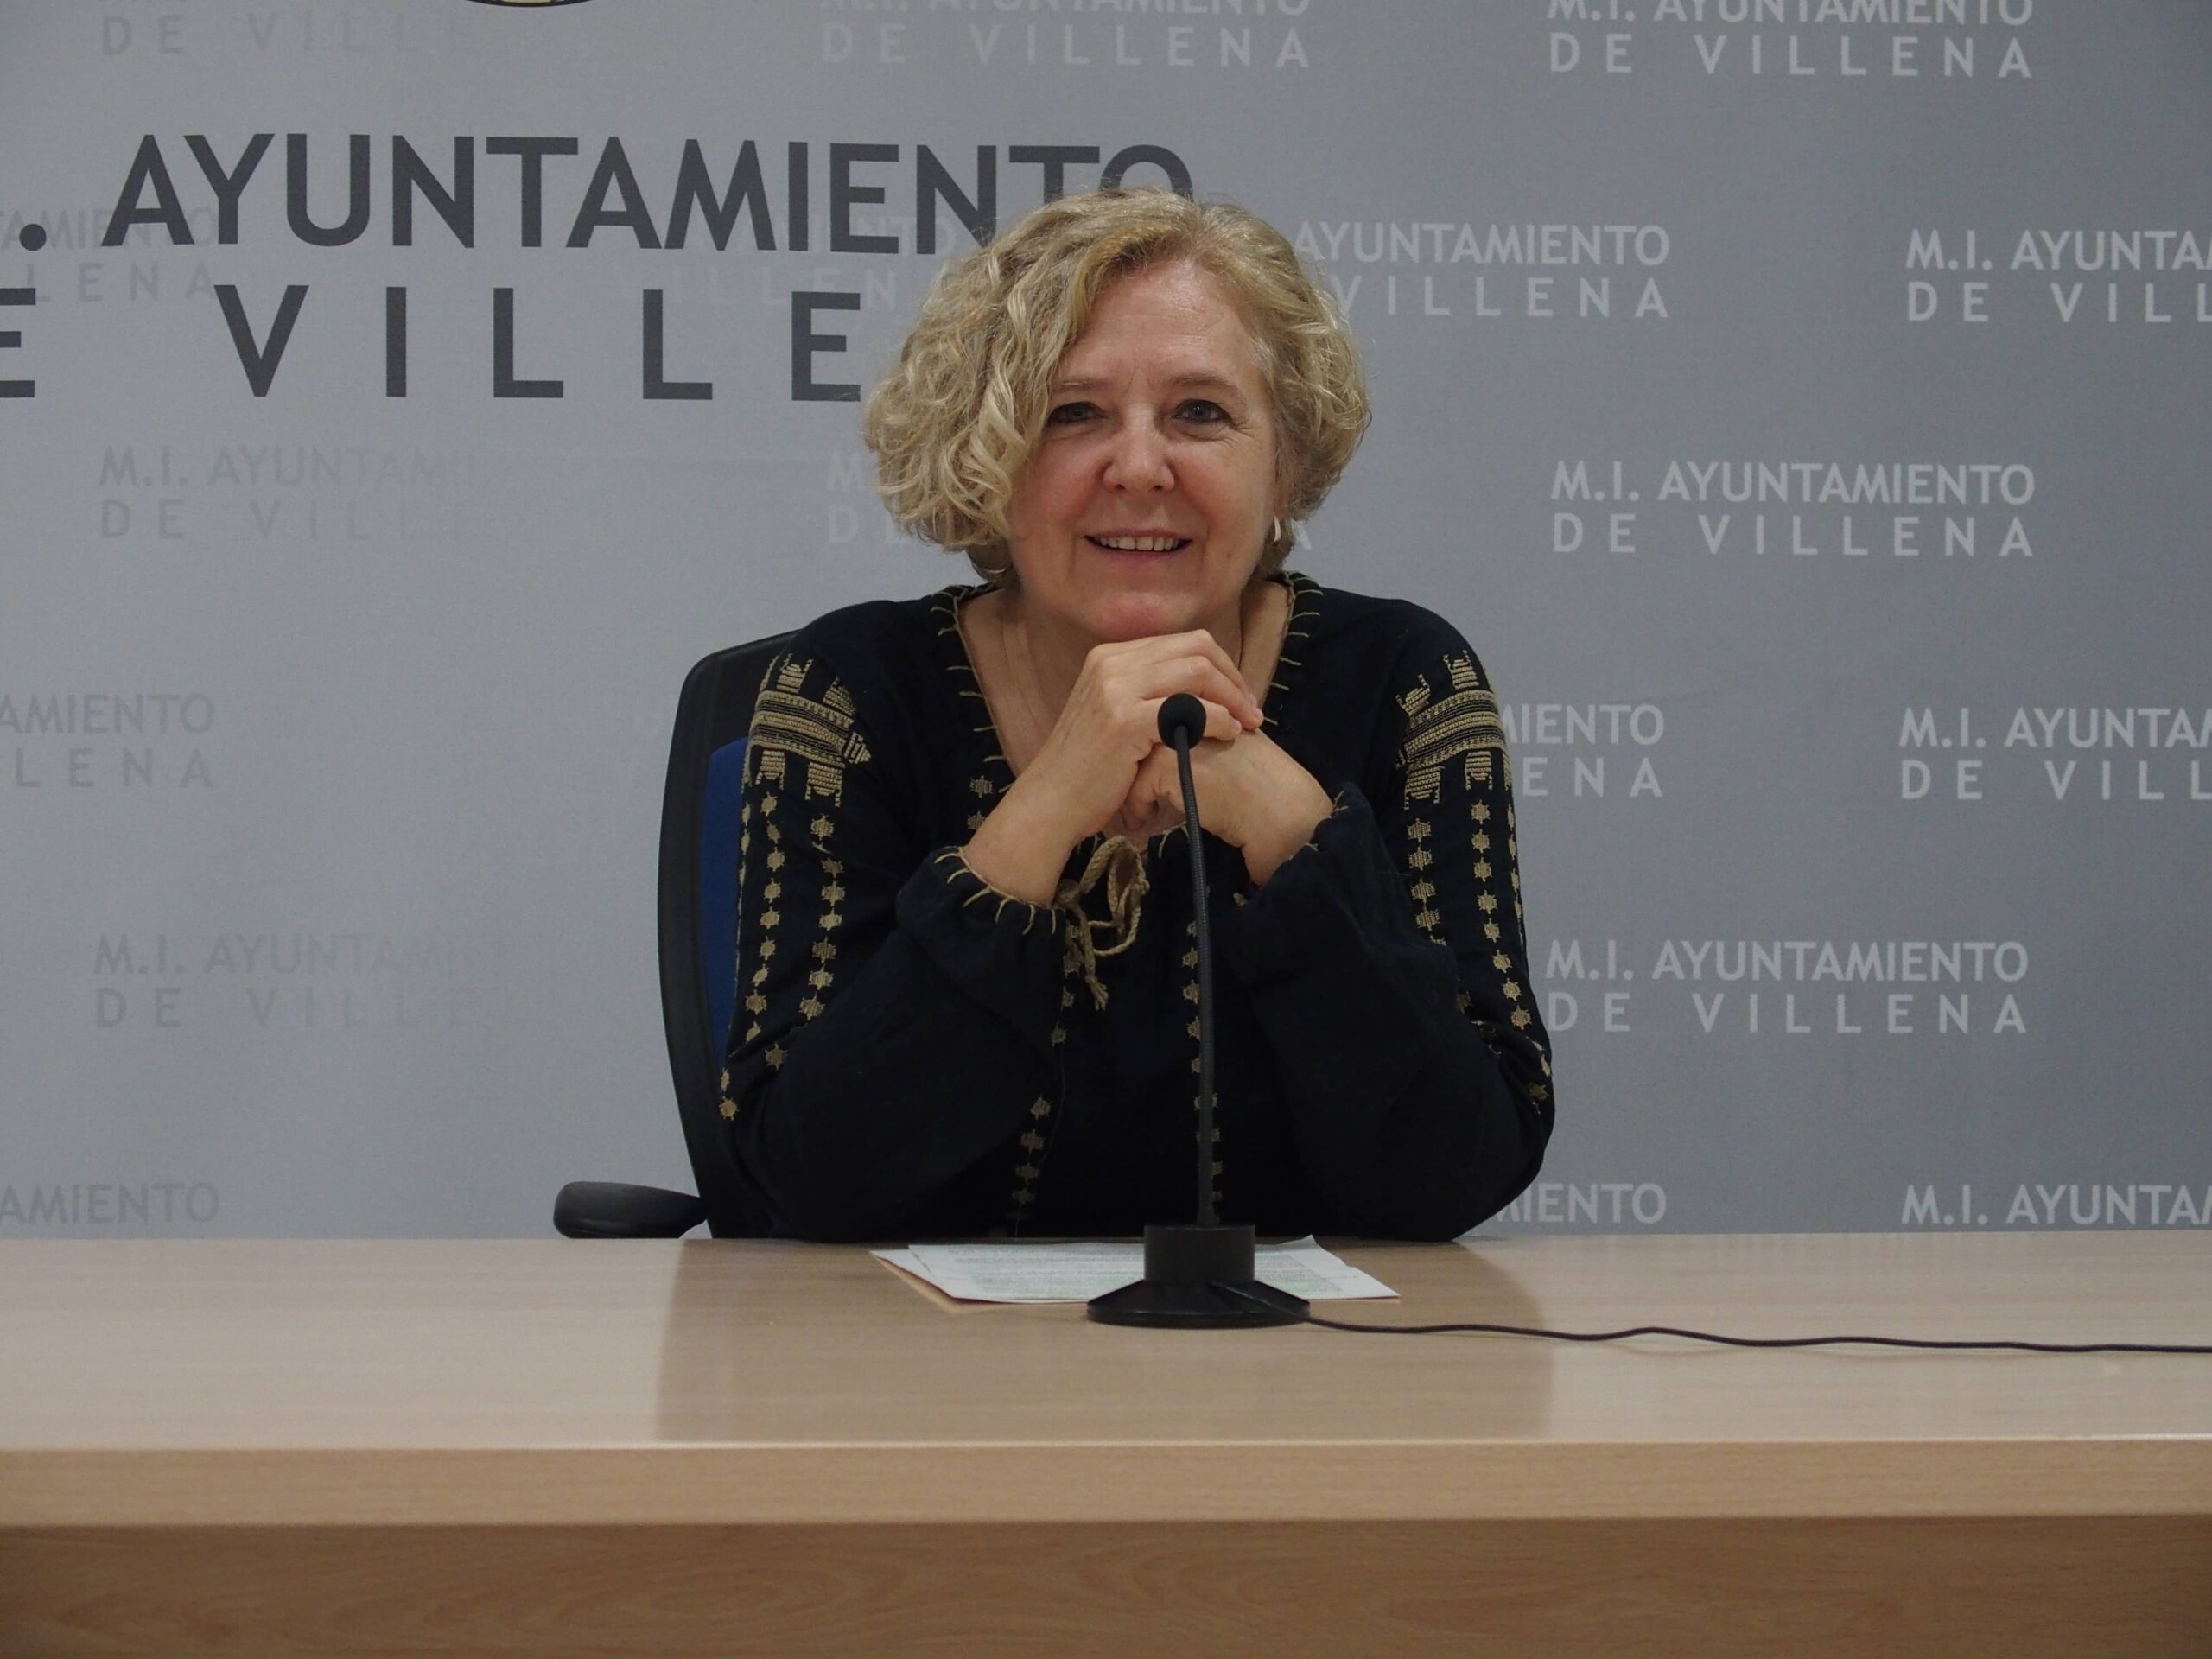 Villena contratará a 7 jóvenes desempleados con una ayuda de casi 100.000 euros